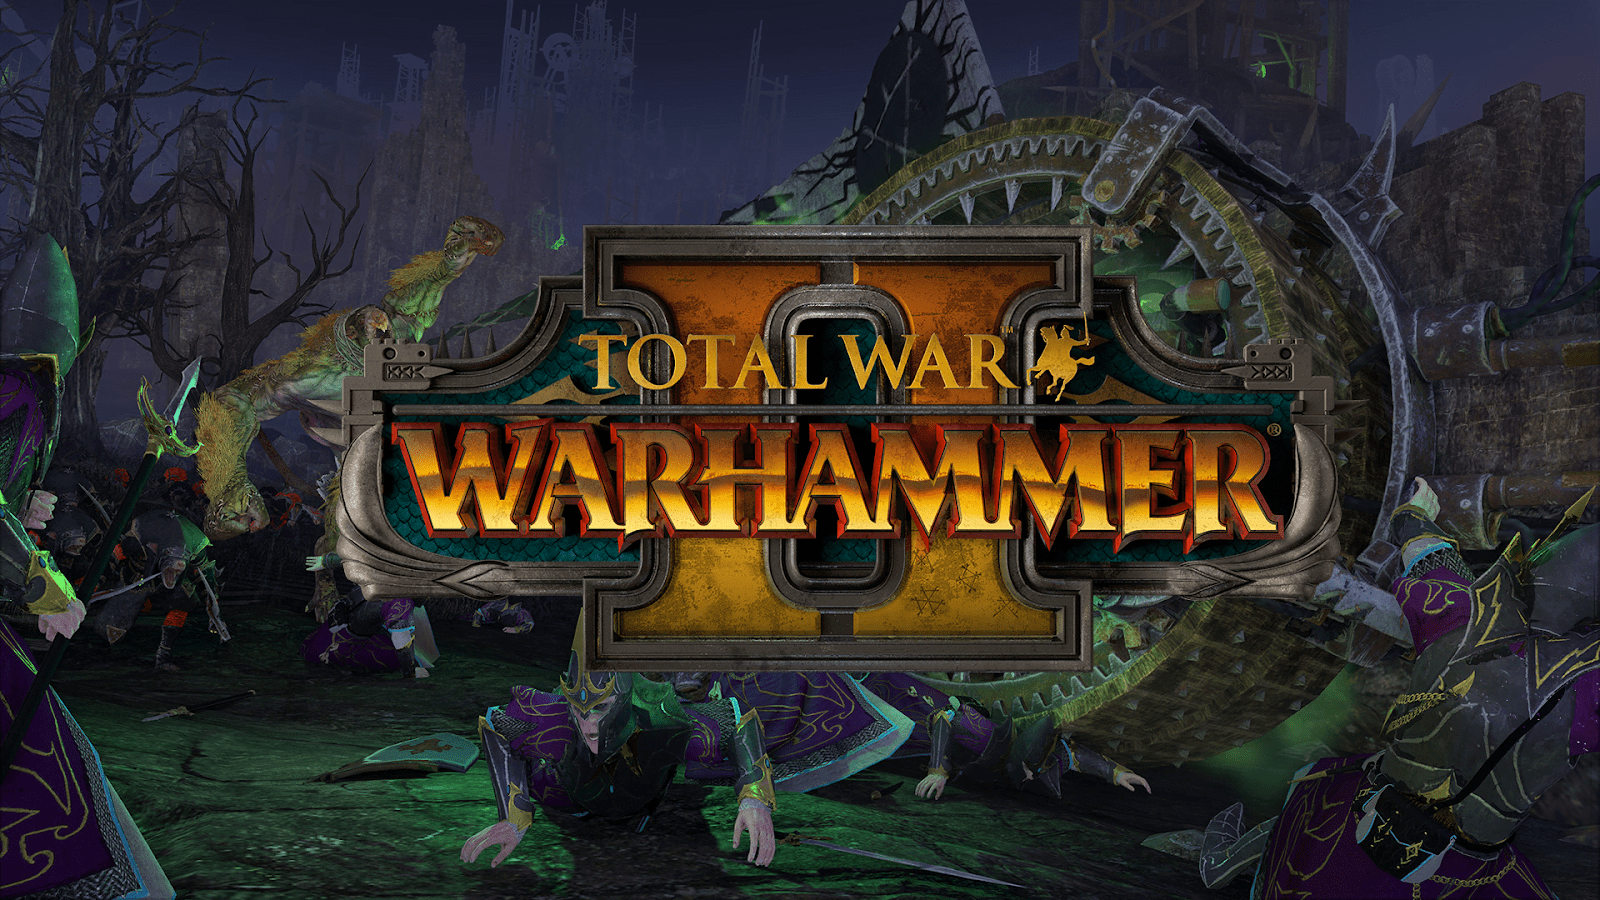 Total War Warhammer 2 Full Version Free Download